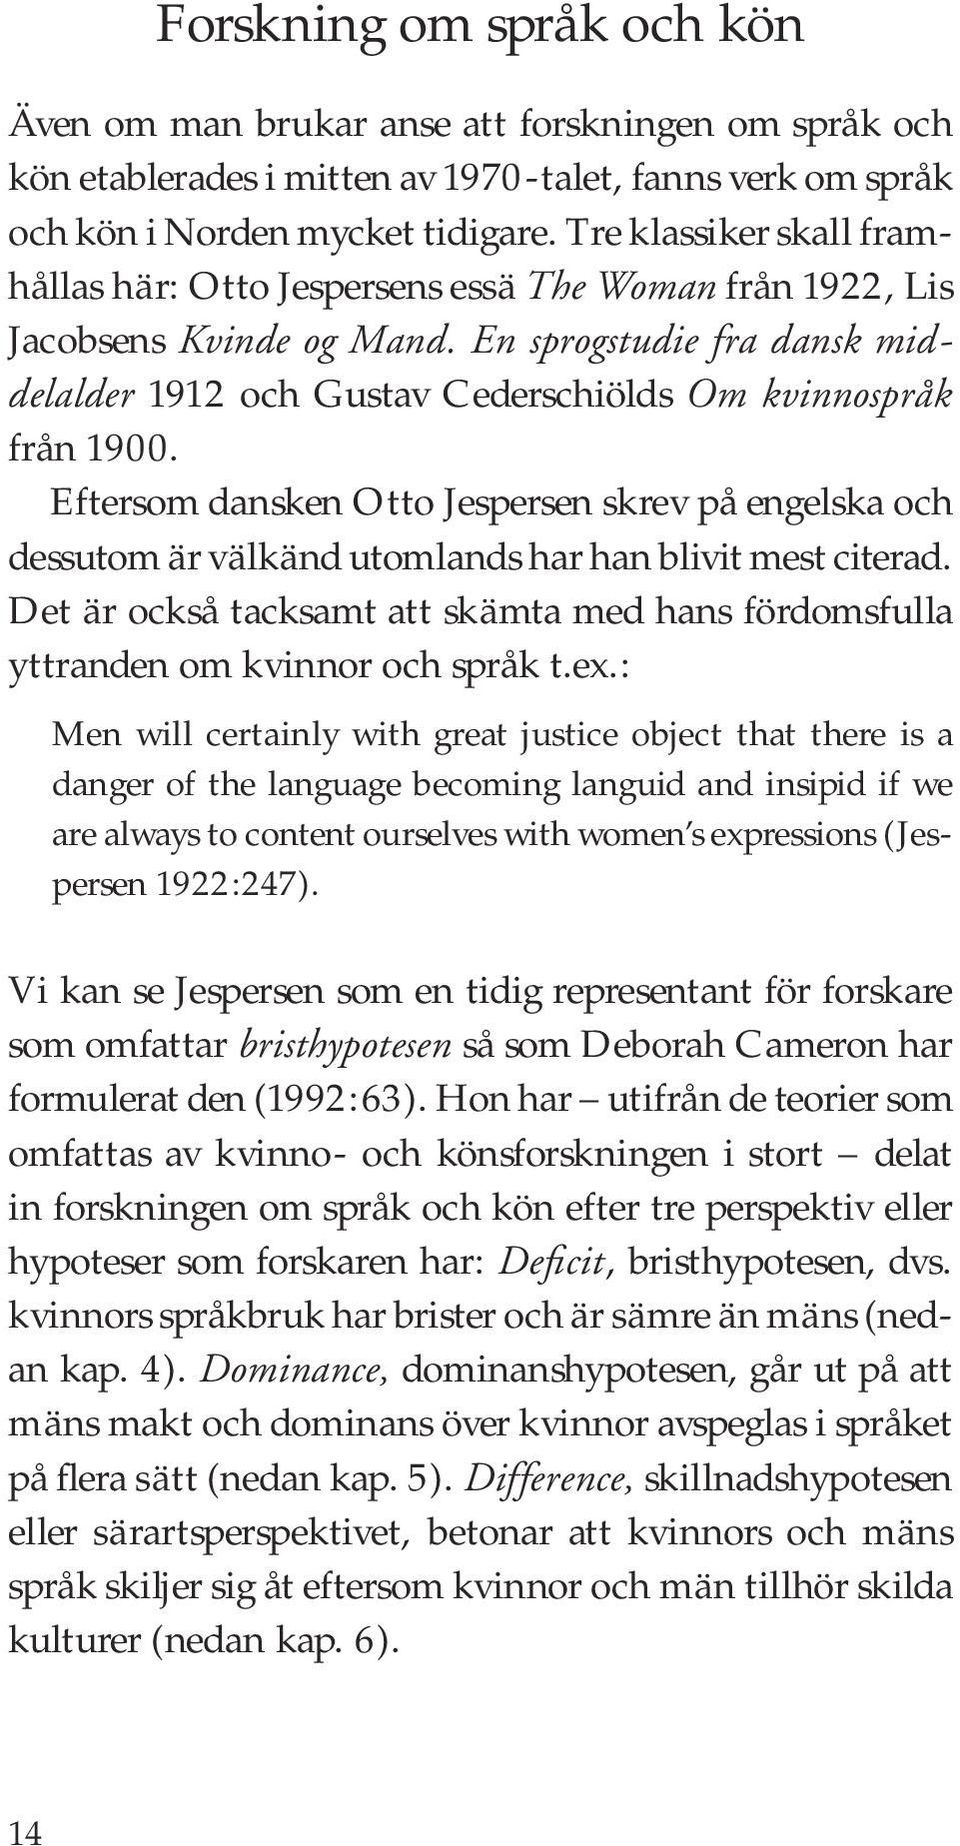 Eftersom dansken Otto Jespersen skrev på engelska och dessutom är välkänd utomlands har han blivit mest citerad.